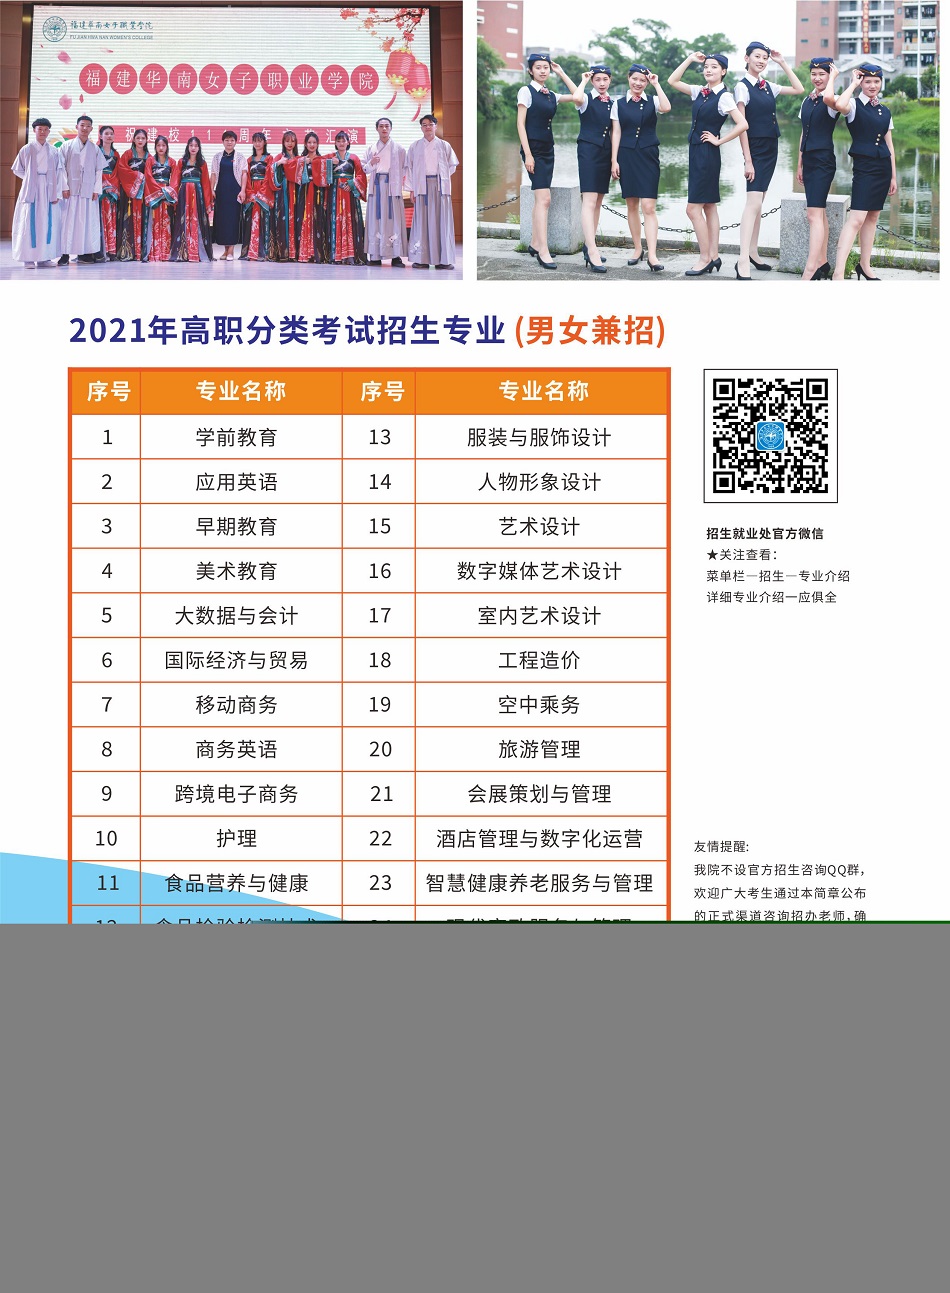 2021年福建华南女子职业学院高职分类考试招生简章